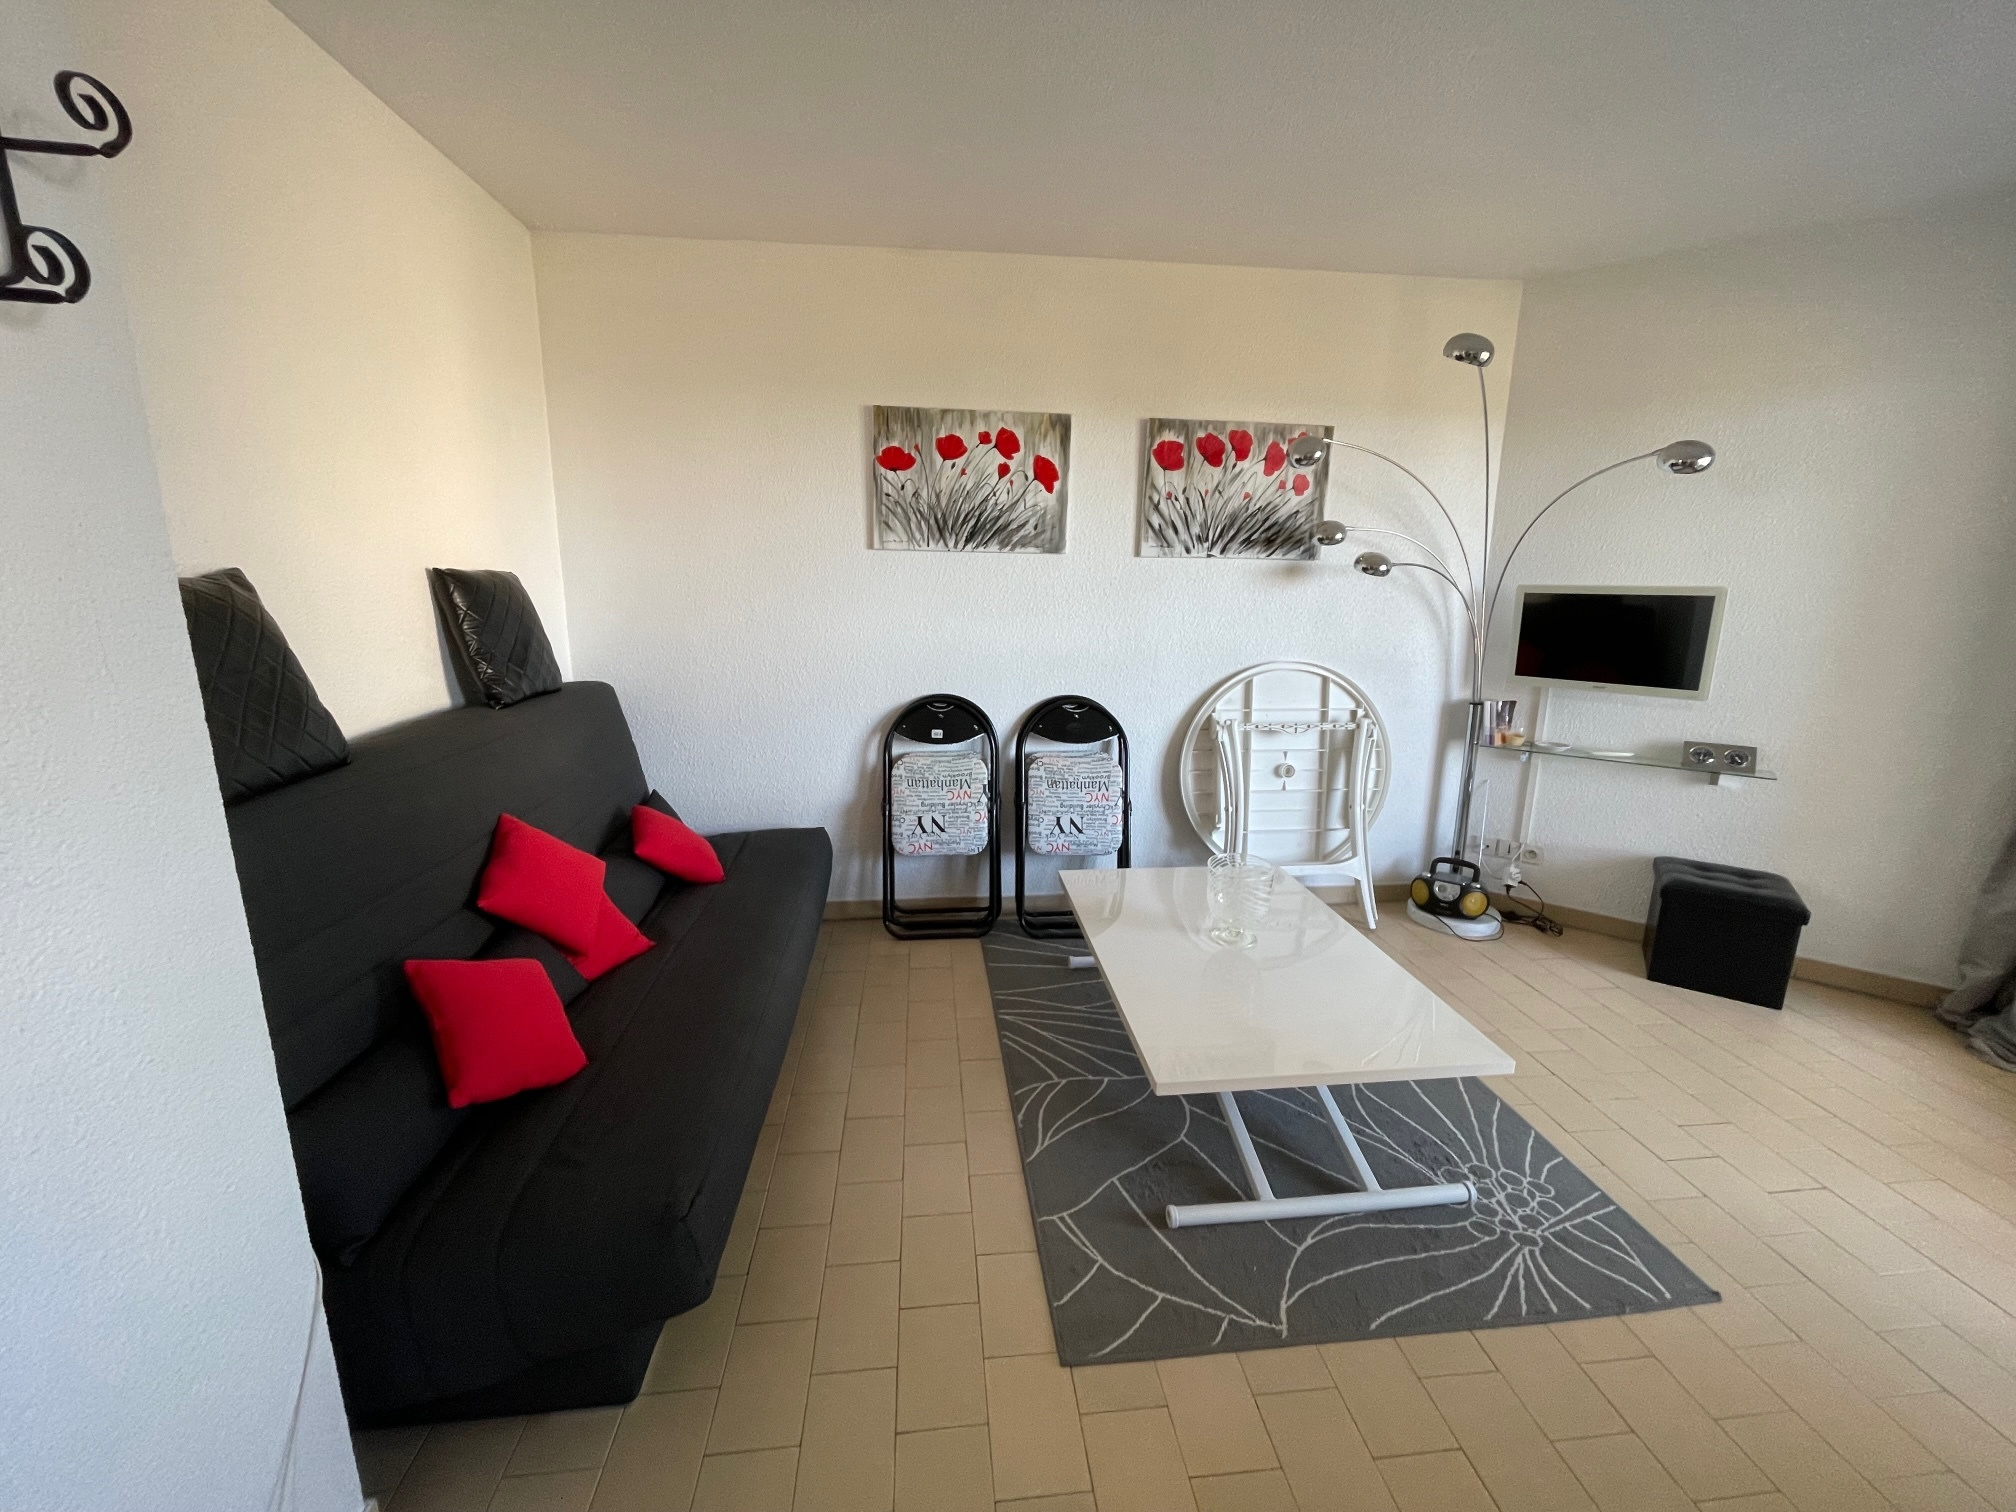 À vendre appartement de 35m2 à st cyprien plage (66750) - Photo 6'